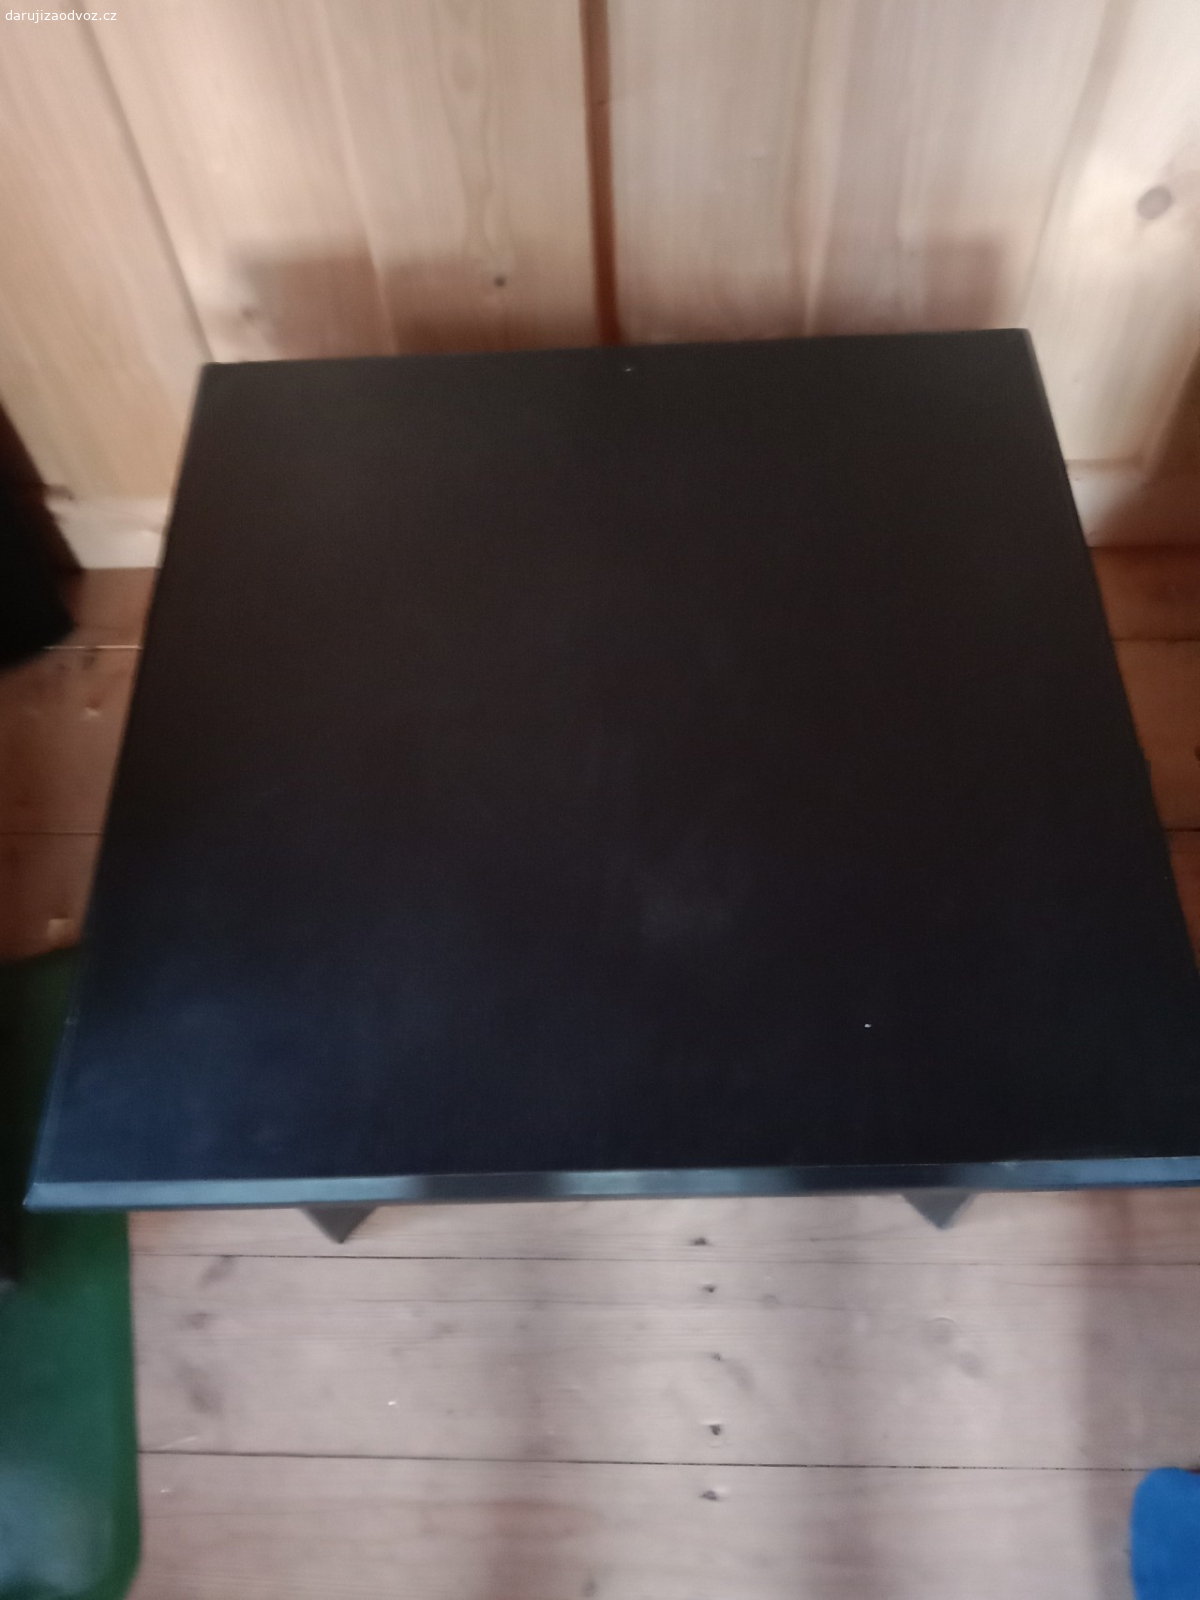 Černý stolek. Daruji za odvoz černý čtvercový stolek. Výška 45 cm, šířka 69 cm.